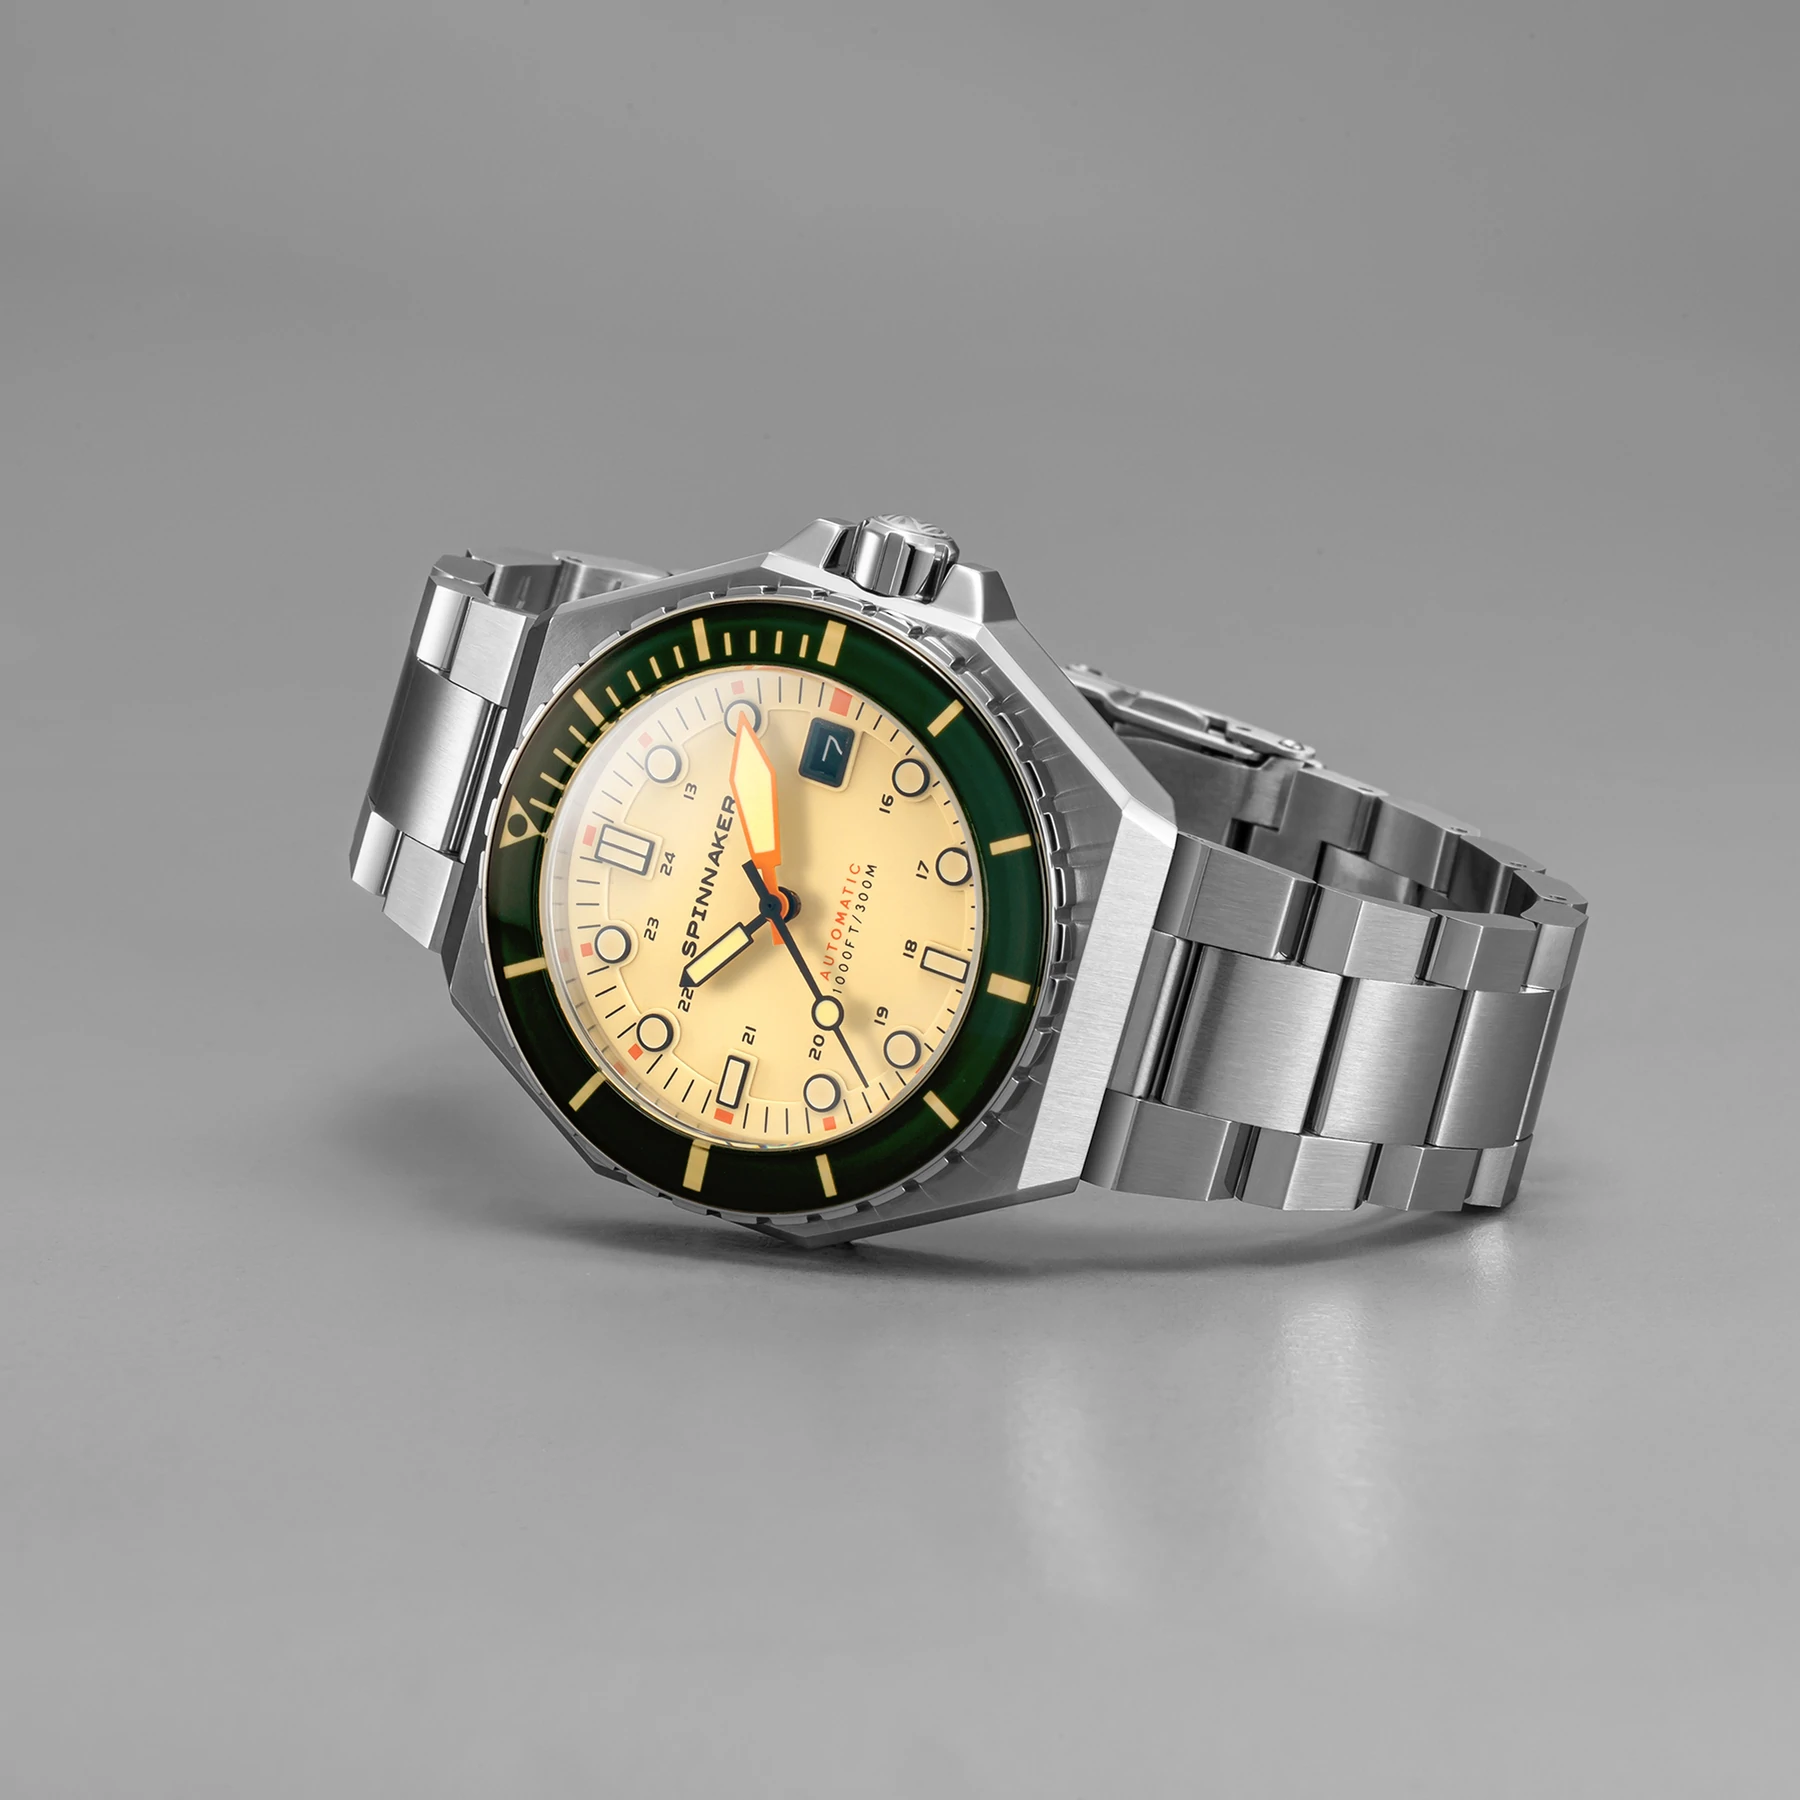 Zegarek męski SPINNAKER Dumas SP-5081-CC